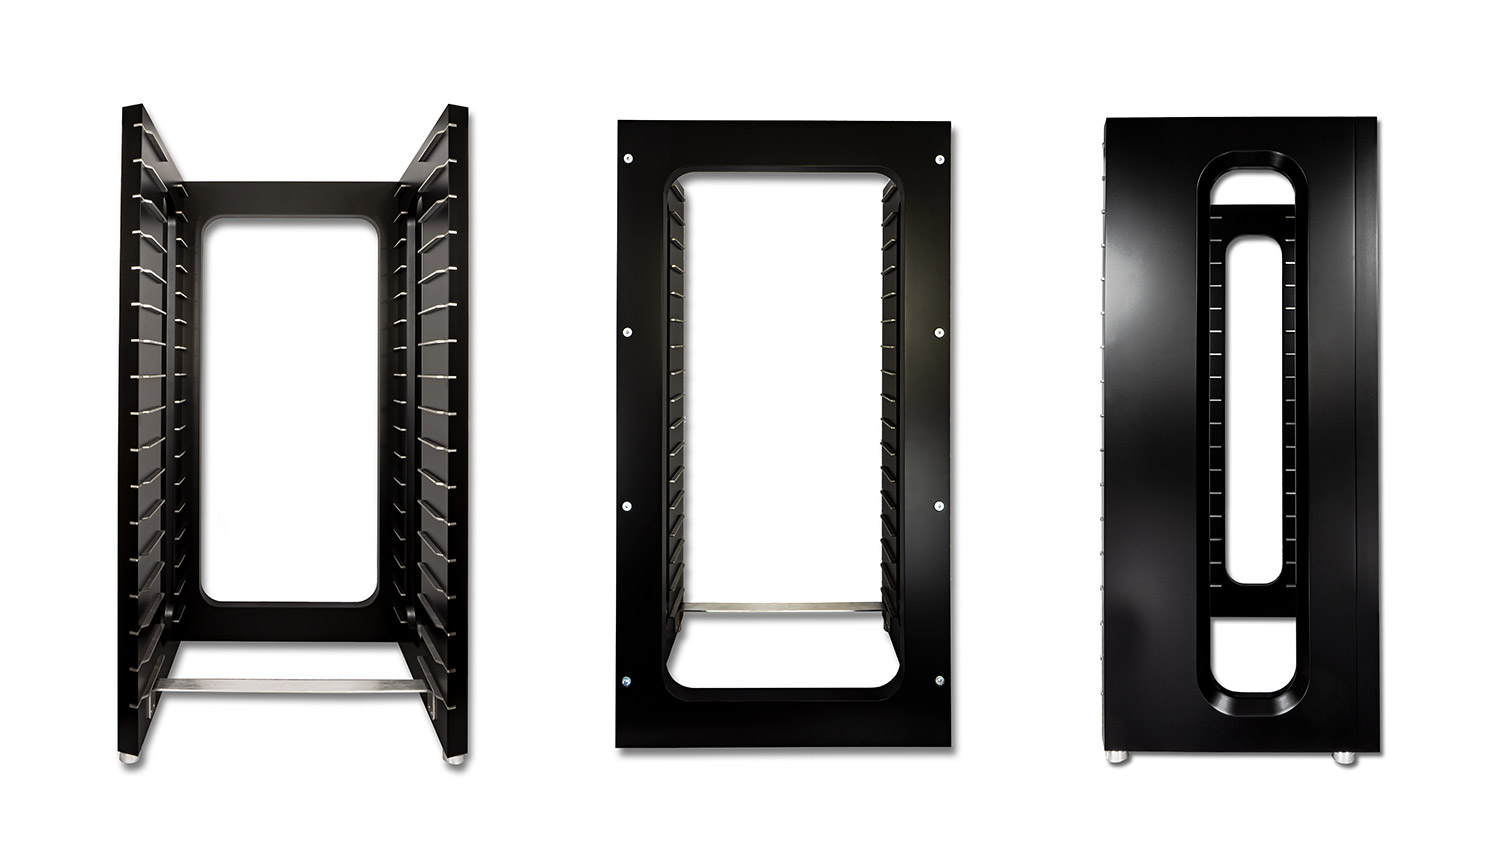 Rahmen des THIXAR HiFi-Racks Serenity Plus L in schwarz matt (Vorderansicht, Rückseite, Seitenperspektive).